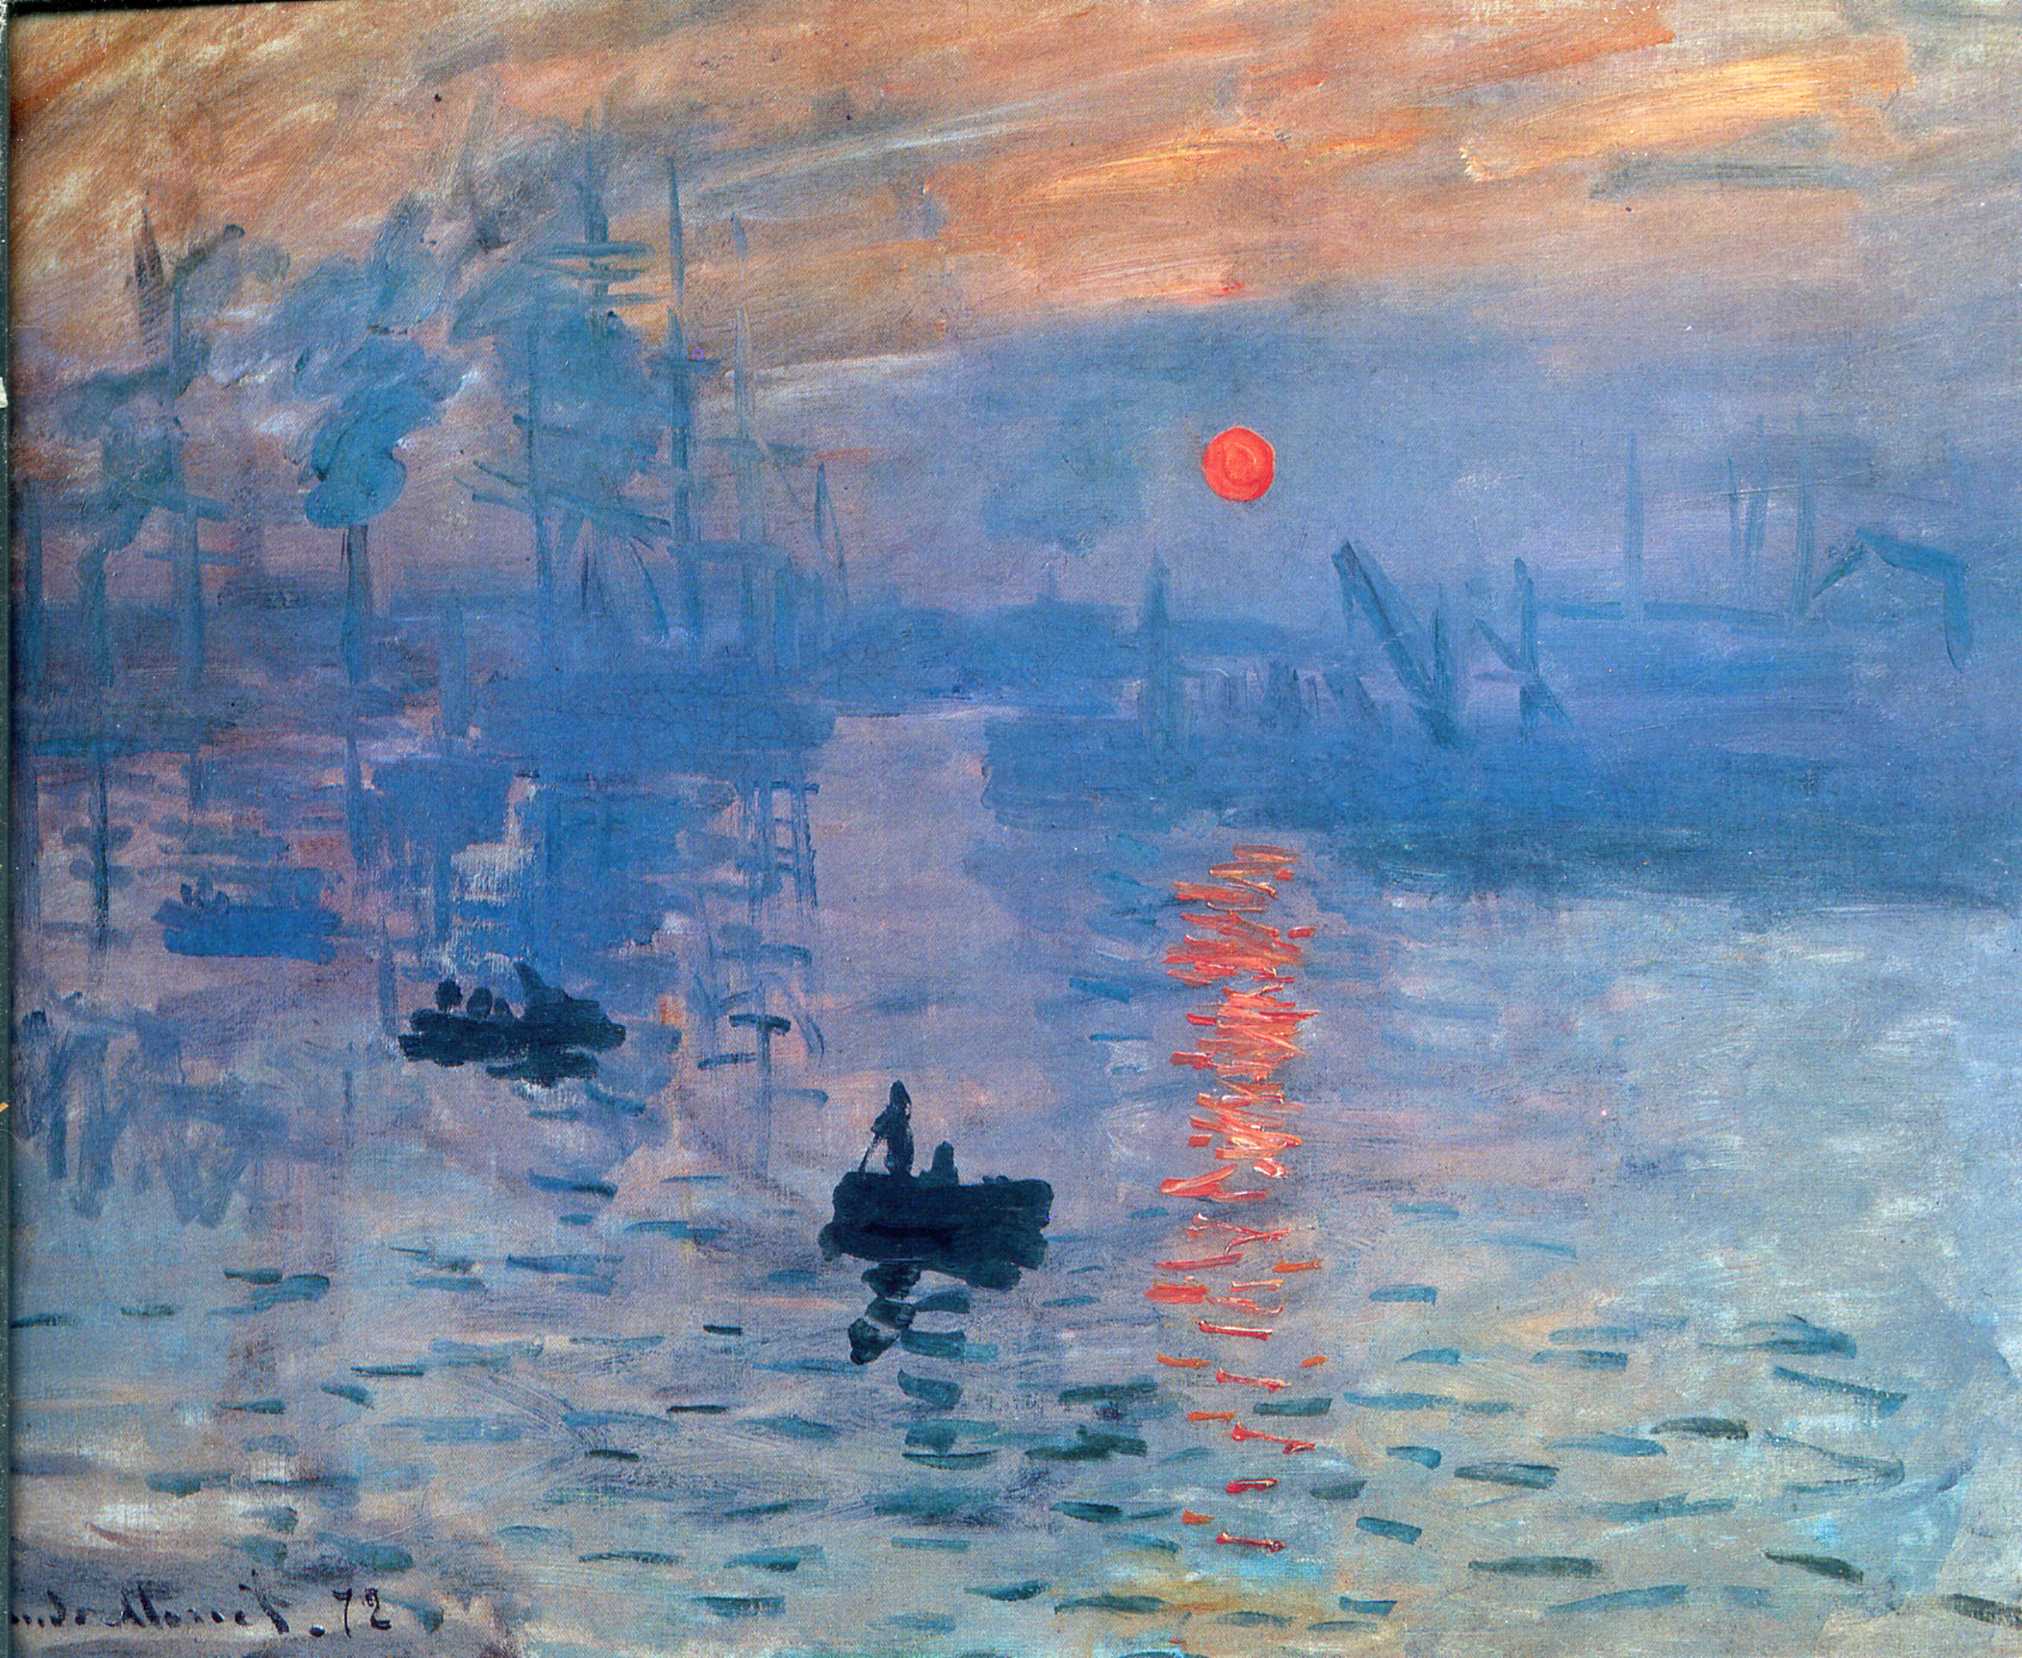 Claude Monet - Impression, sunrise 1873